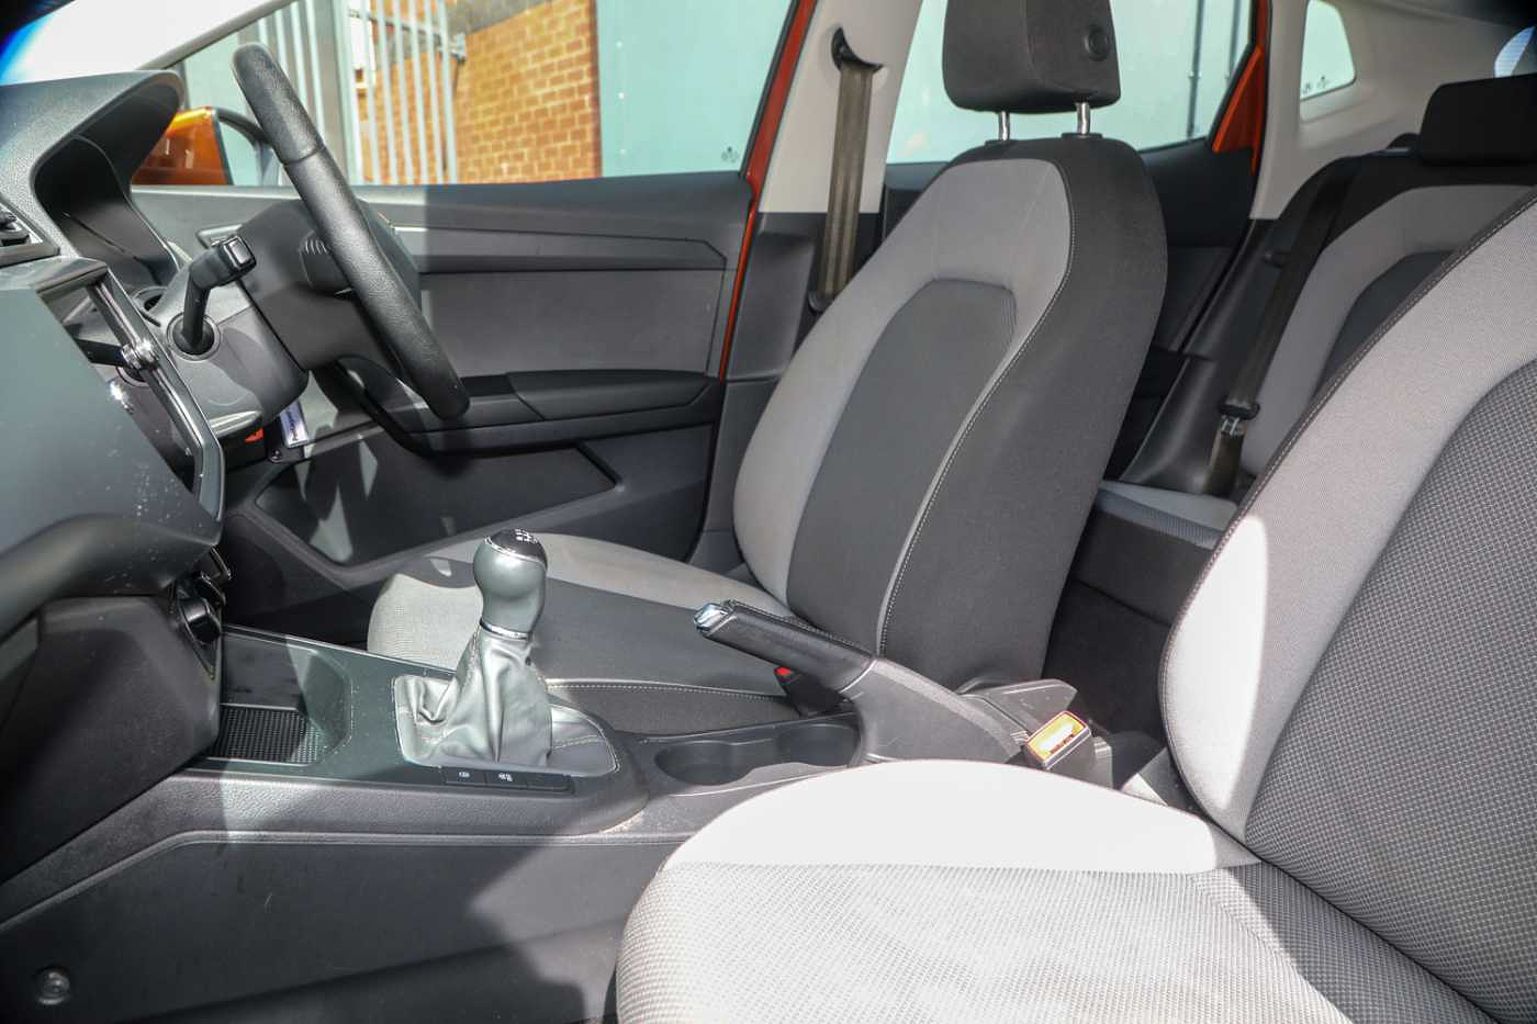 SEAT Ibiza 1.0 MPI (80ps) SE Technology (s/s) 5-Door